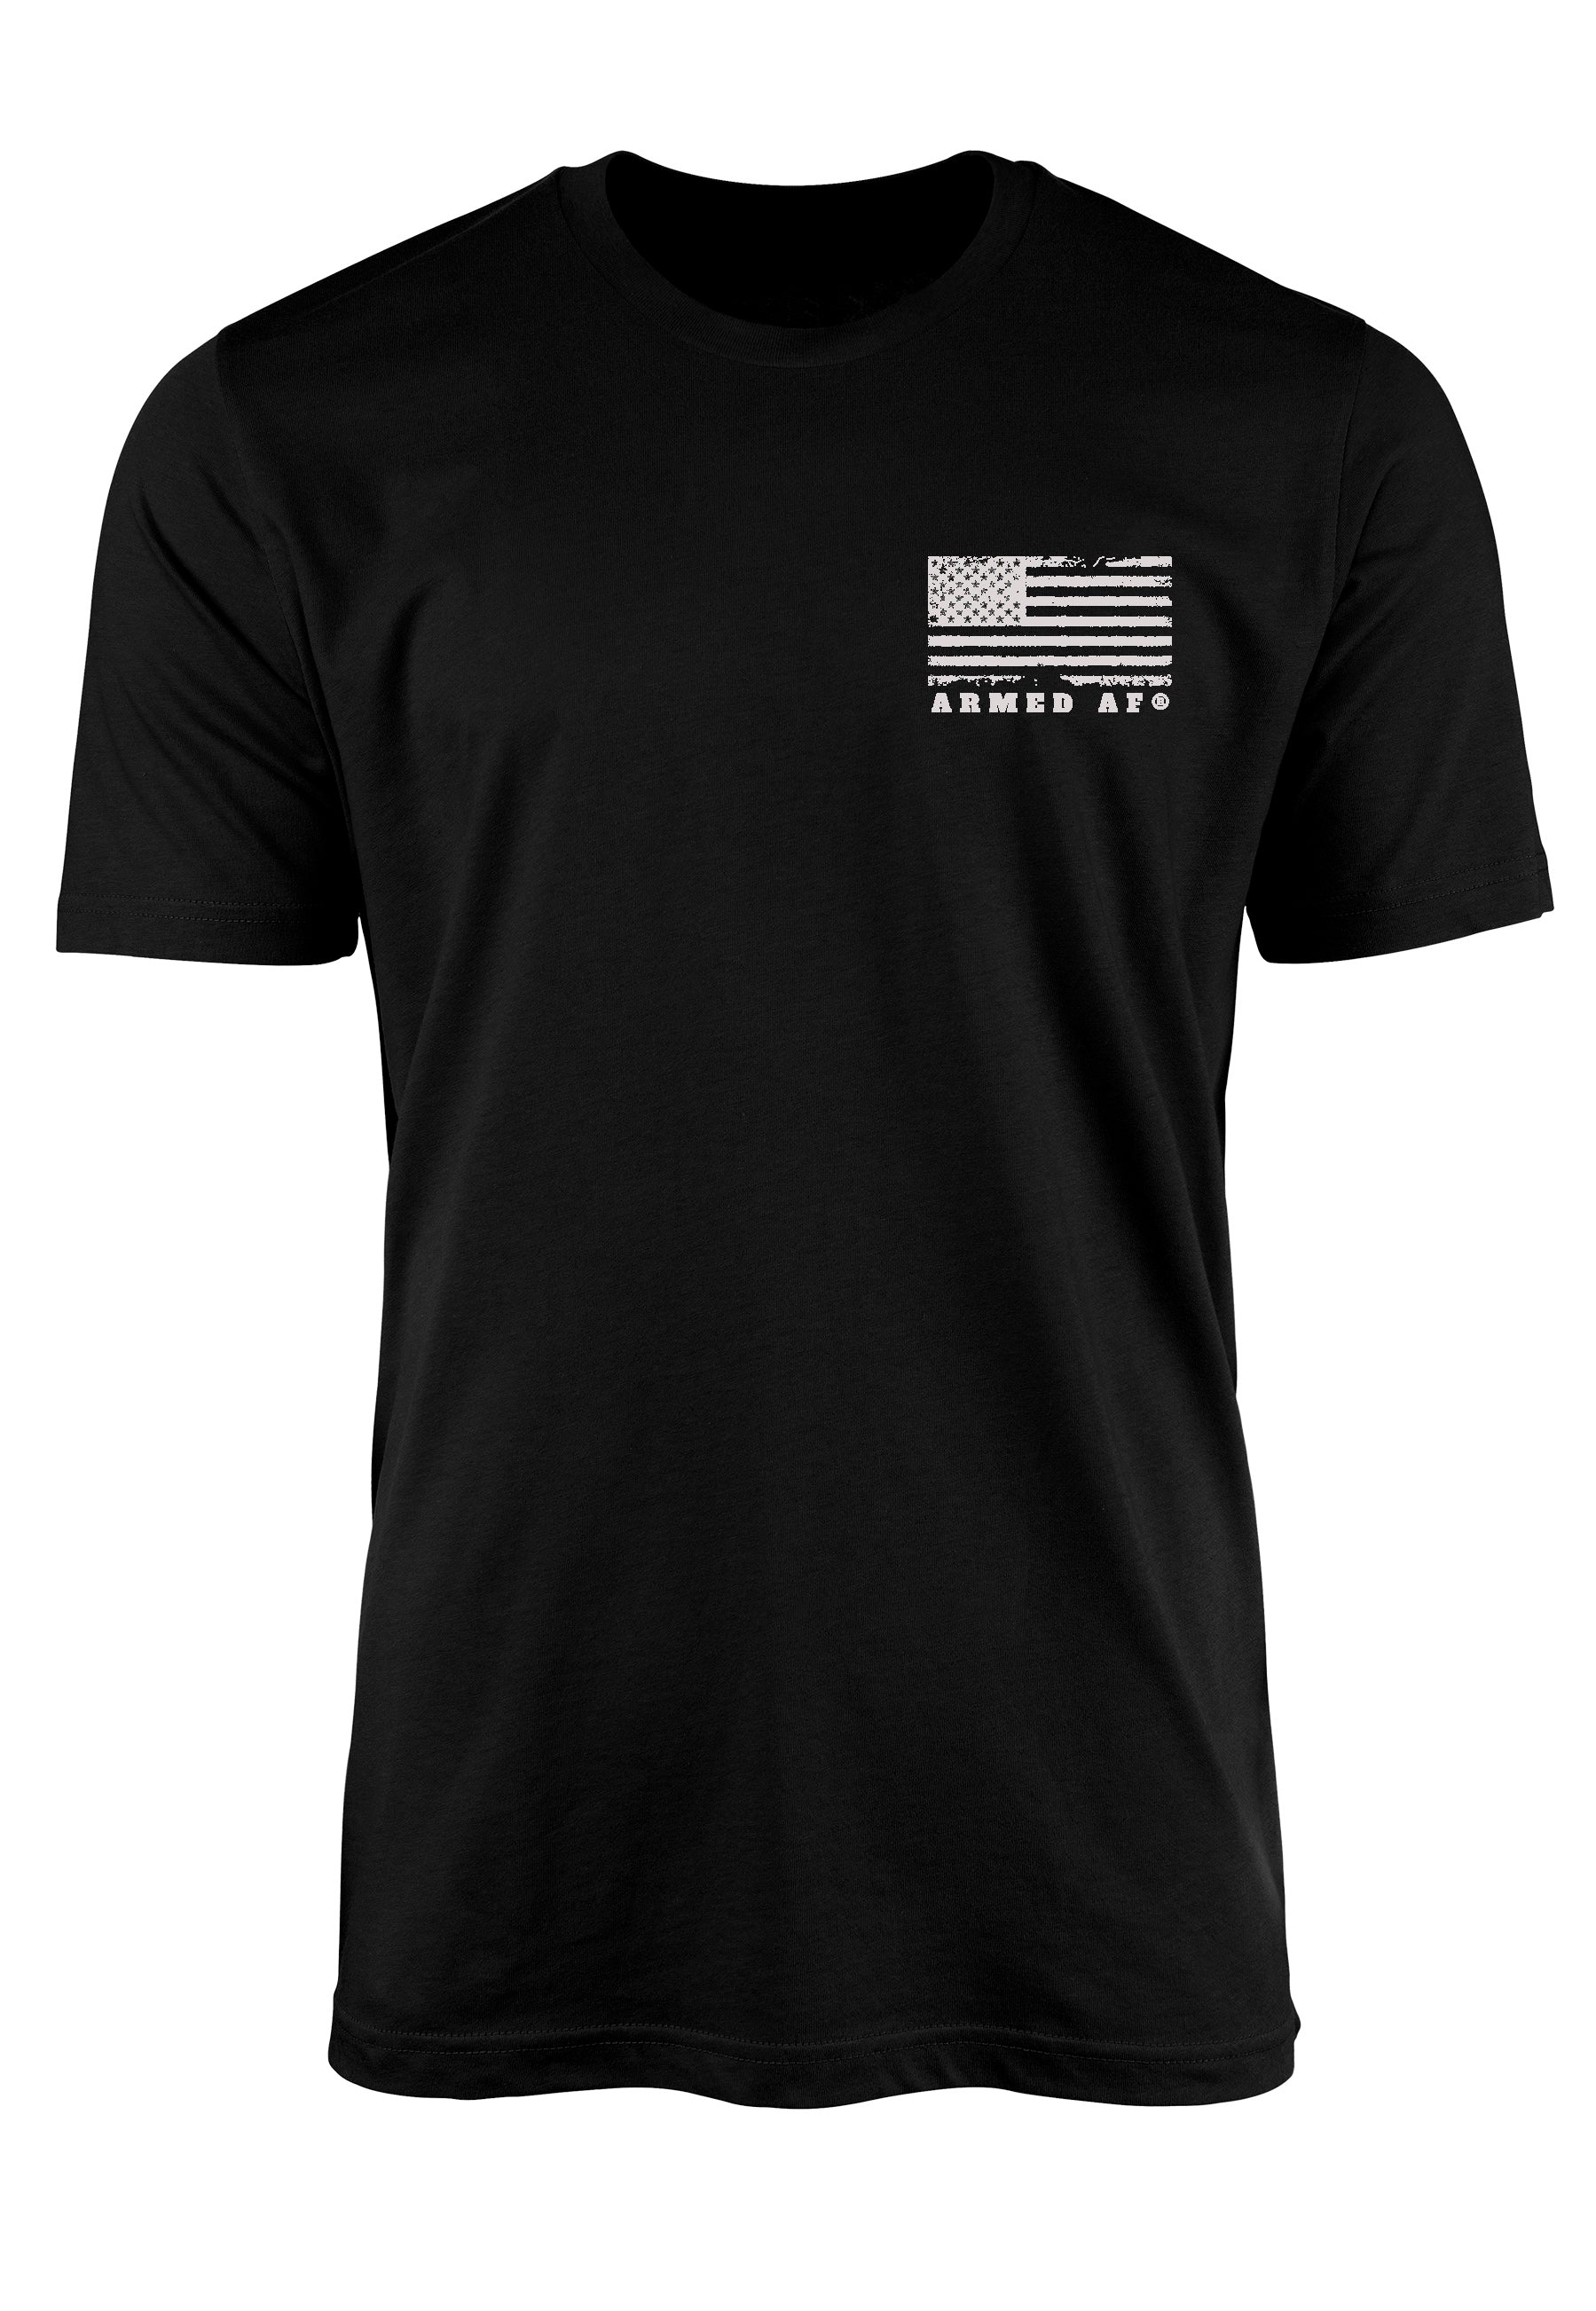 Armed AF chest print on patriot shirt